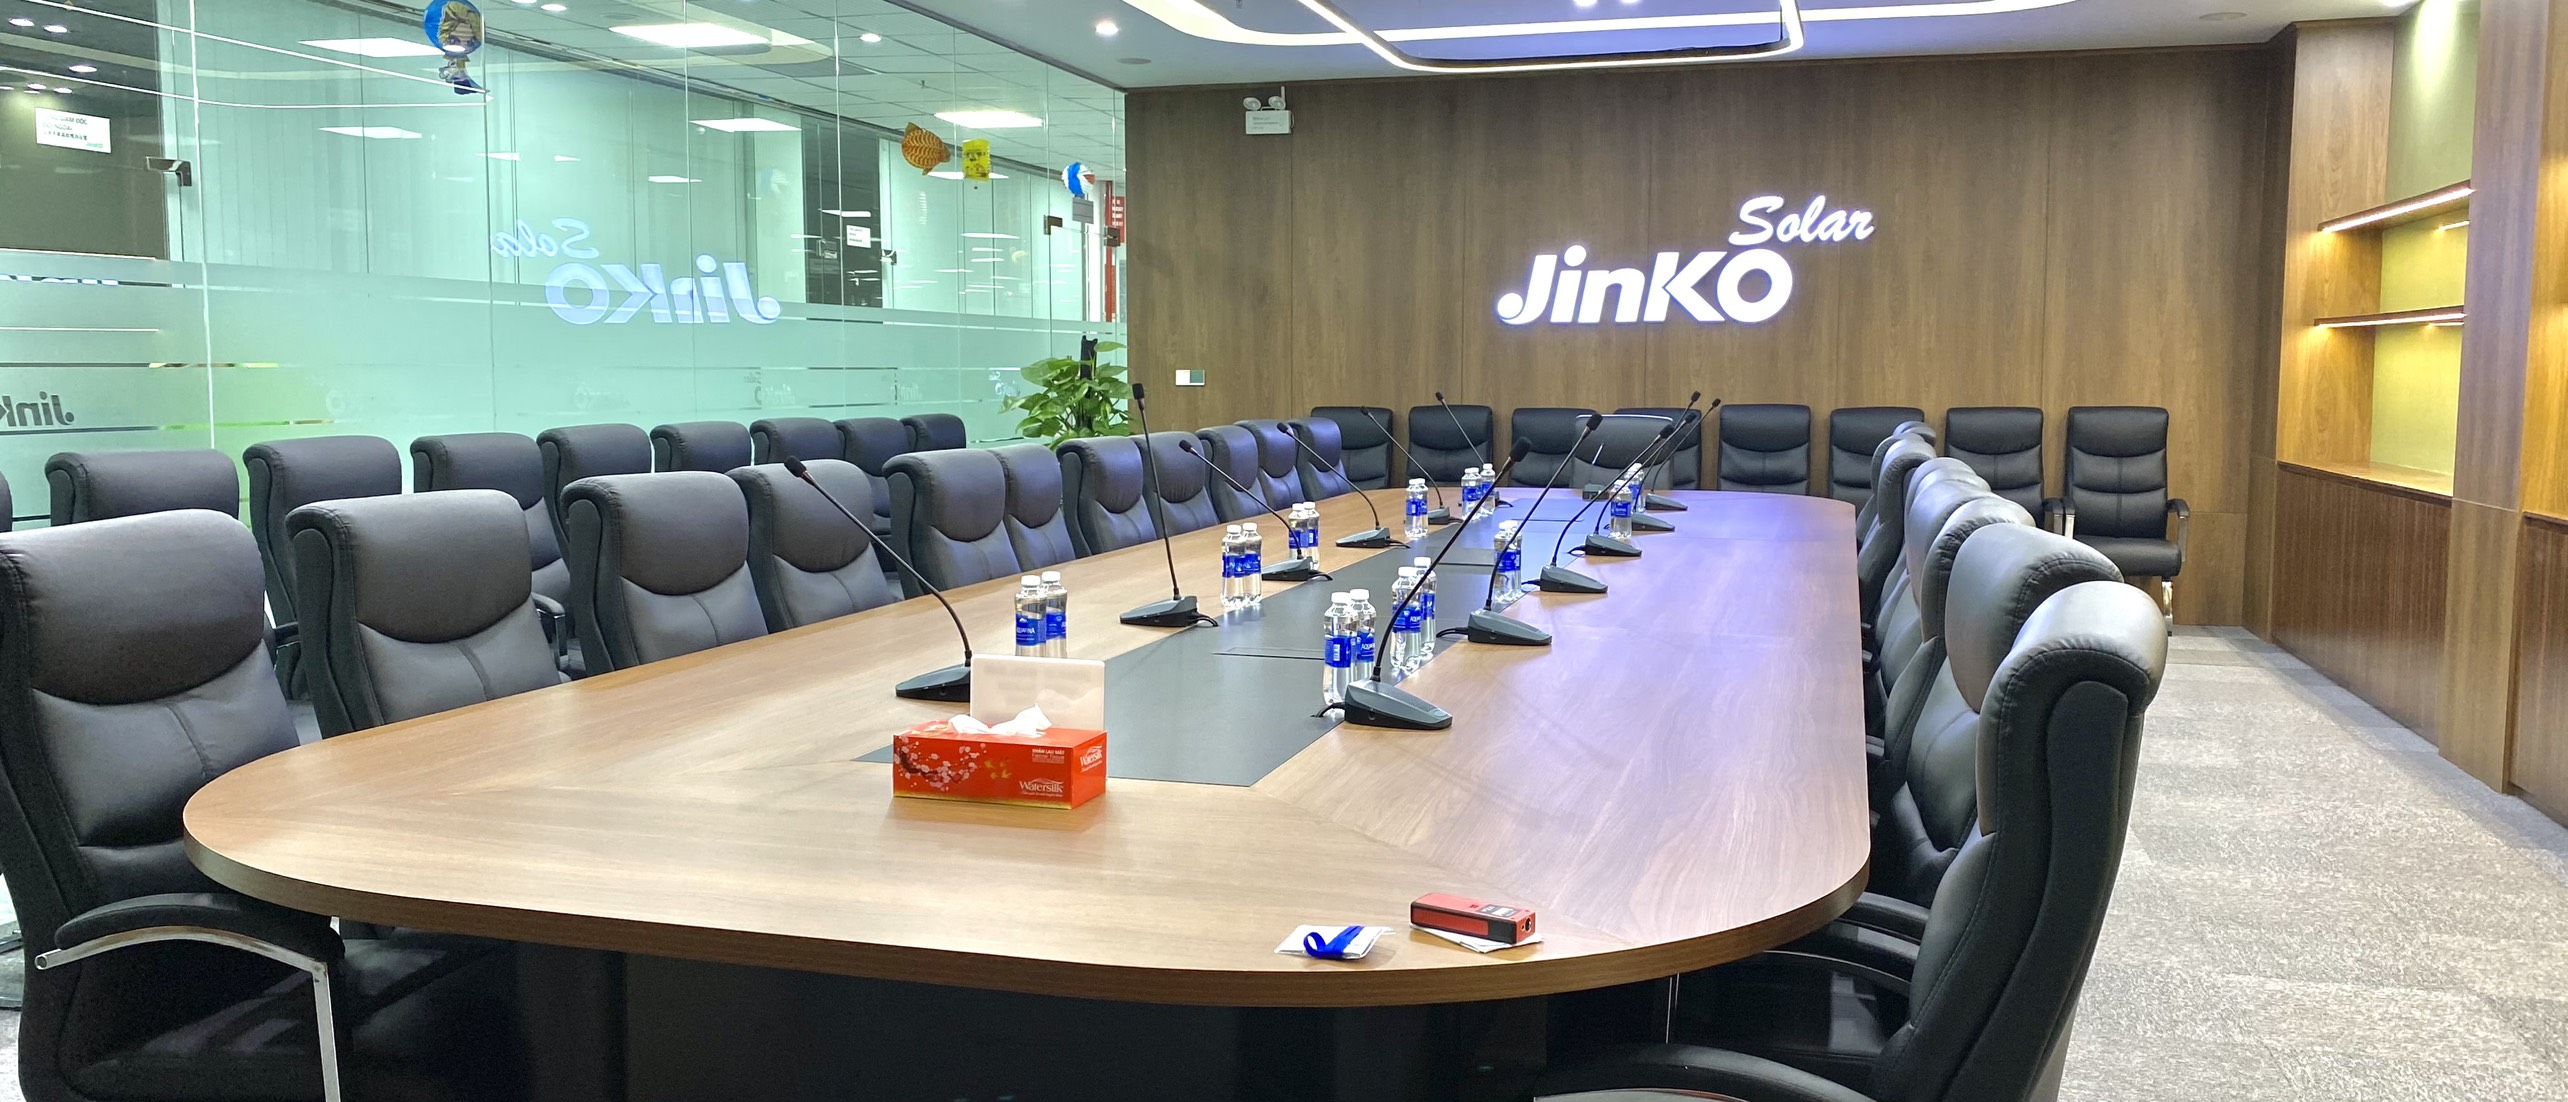 Thiết kế nội thất phòng họp khu công nghiệp JinkoSolar